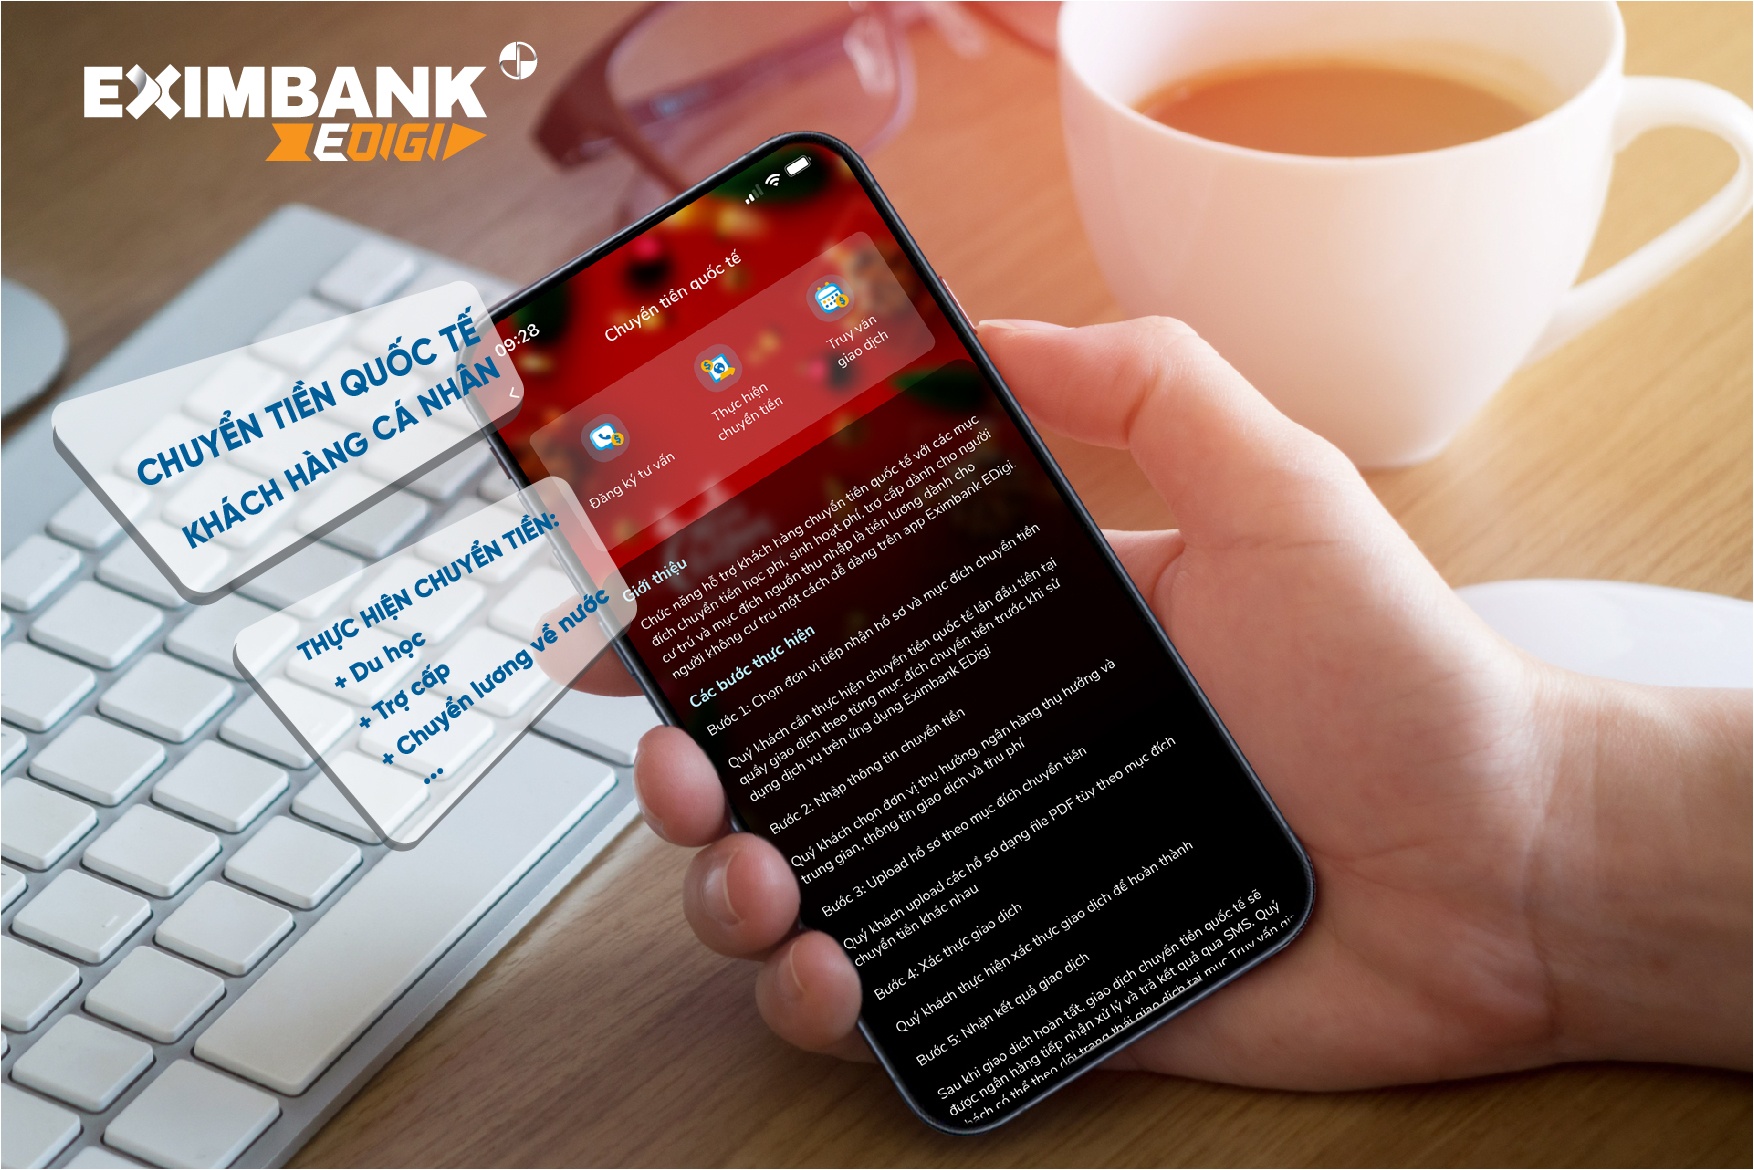 chuyen tien quoc te online tren app eximbank edigi